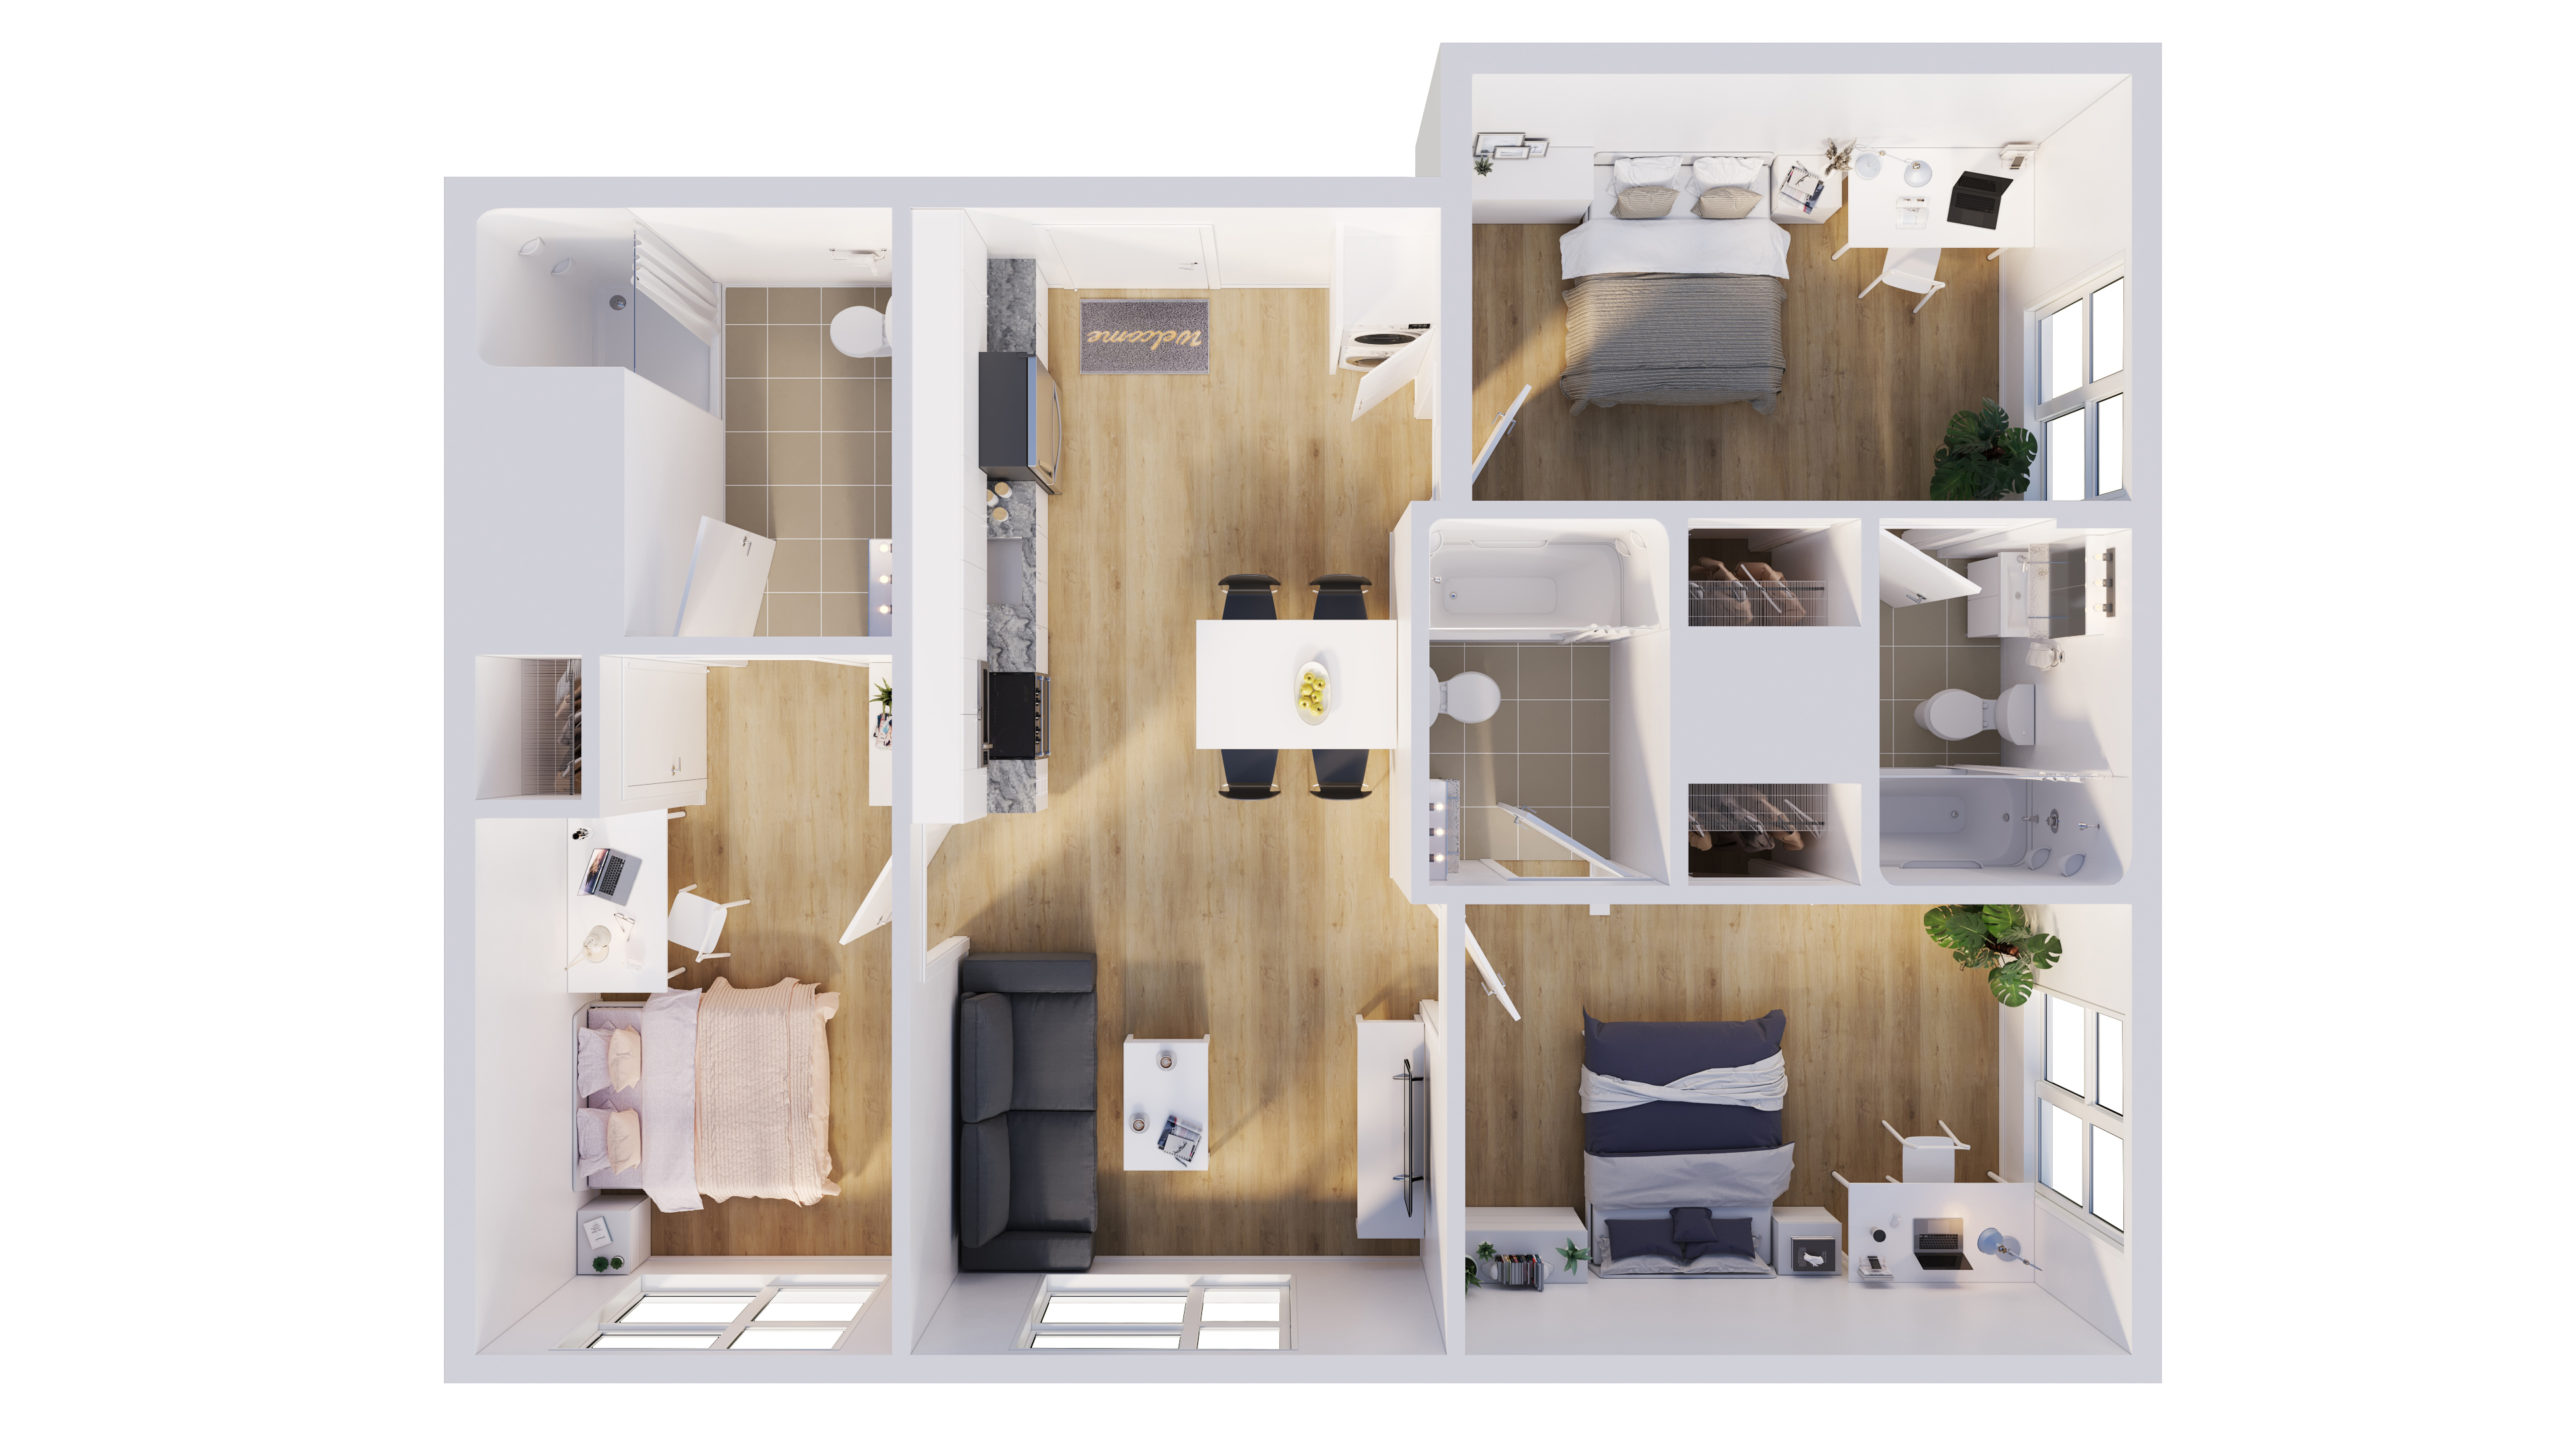 3-Bedroom Apartment Floor Plan